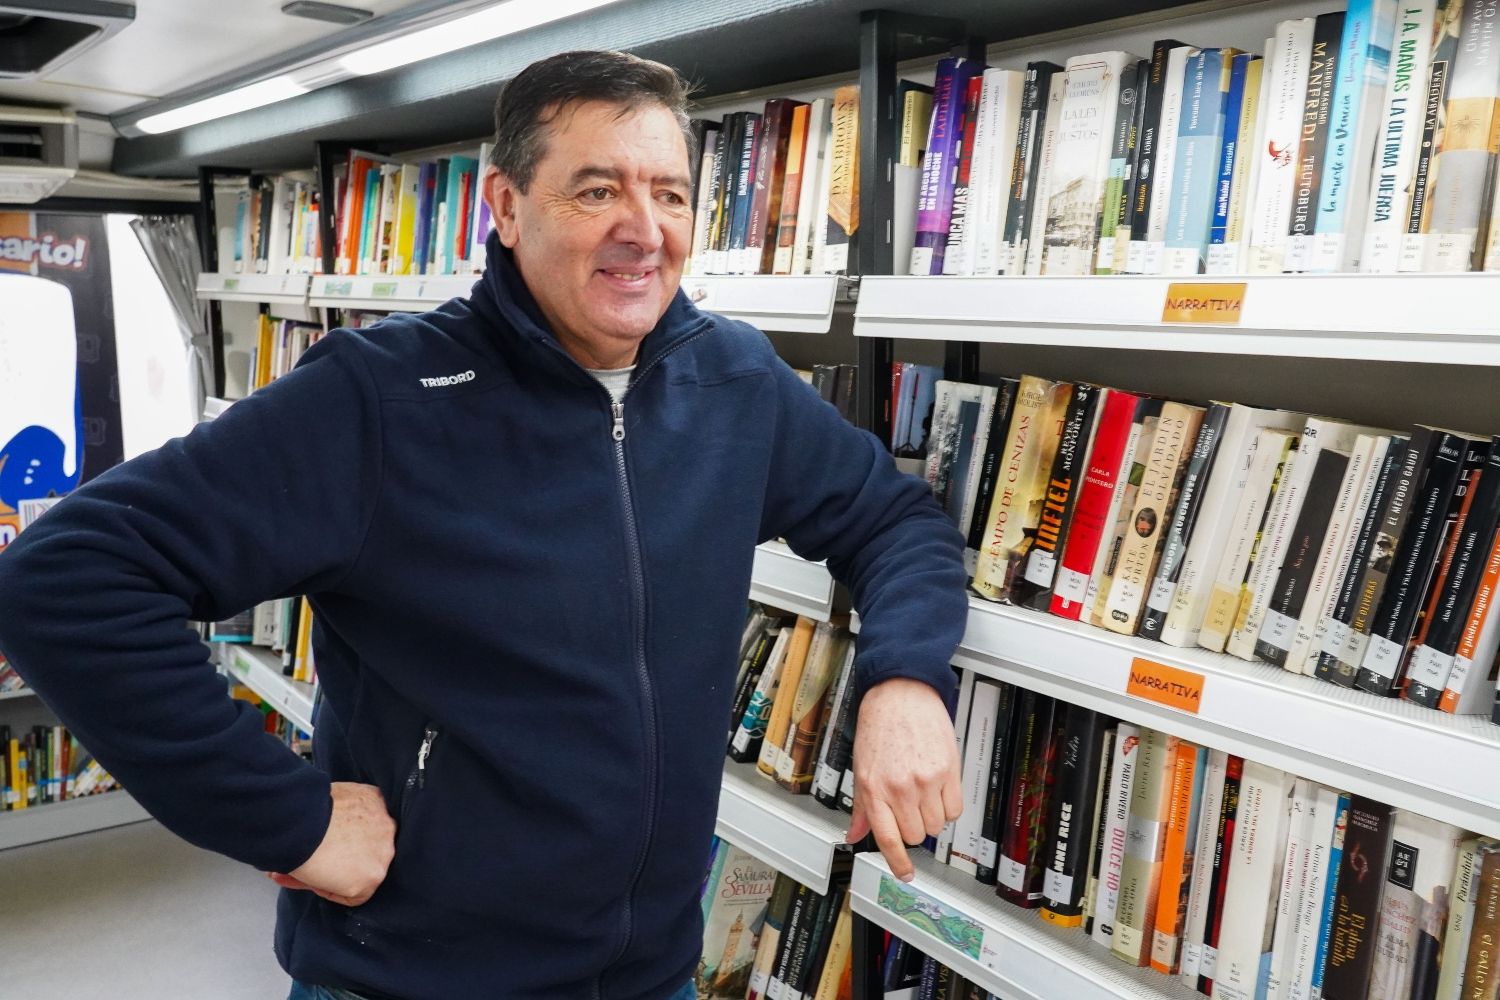 El Bibliobús de León cumple 50 años: Más que un servicio de libros, una conexión vital en los pueblos olvidados